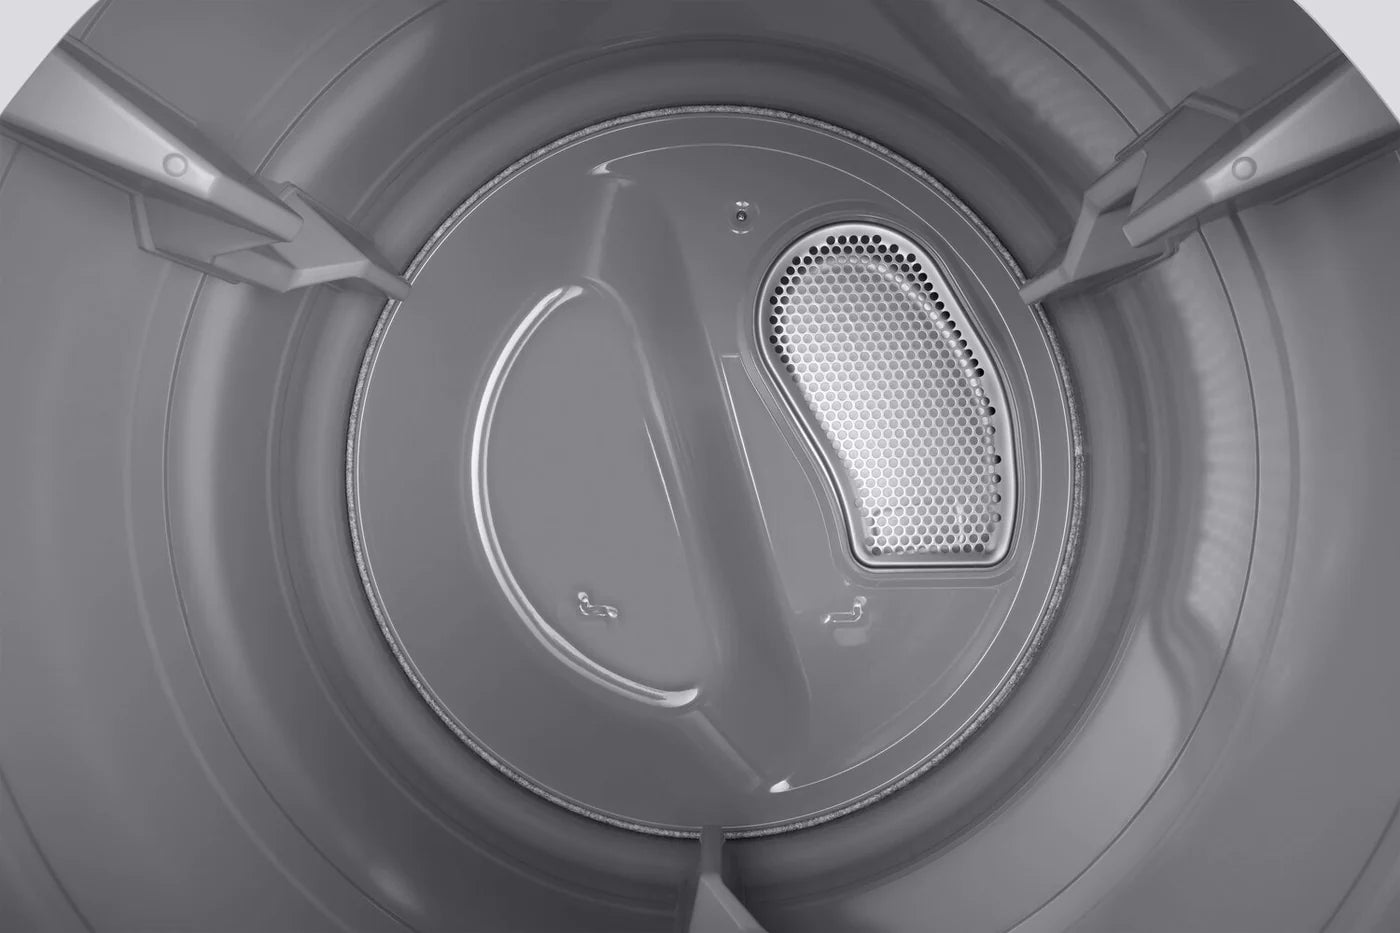 Samsung Dryers 27" White DVE45T6005W